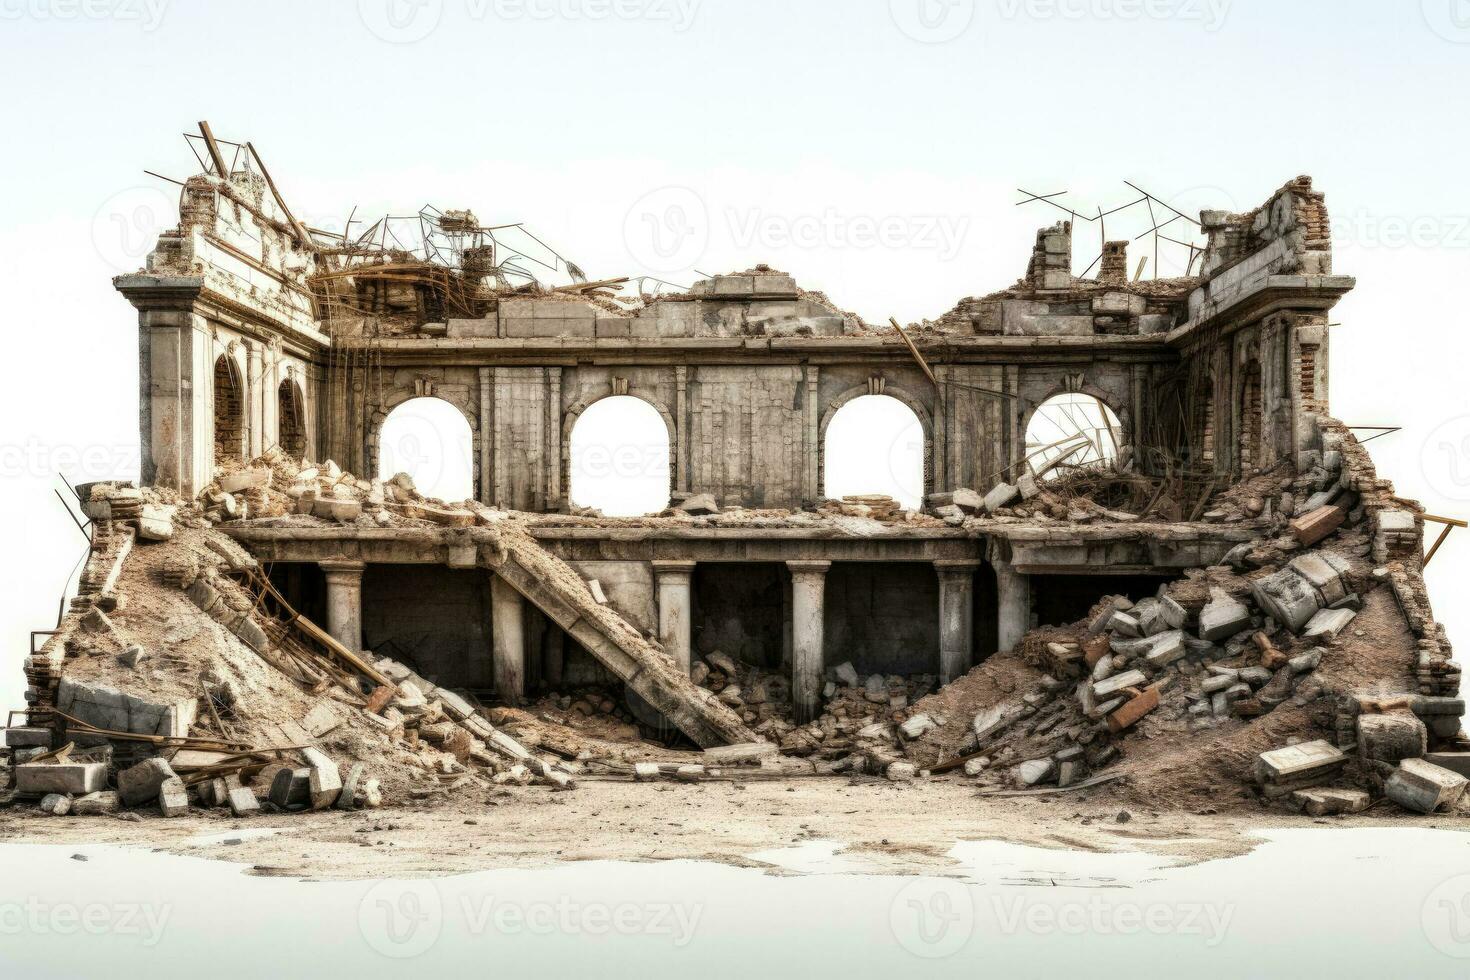 historisk byggnad ruiner posta rivning isolerat på en vit bakgrund foto